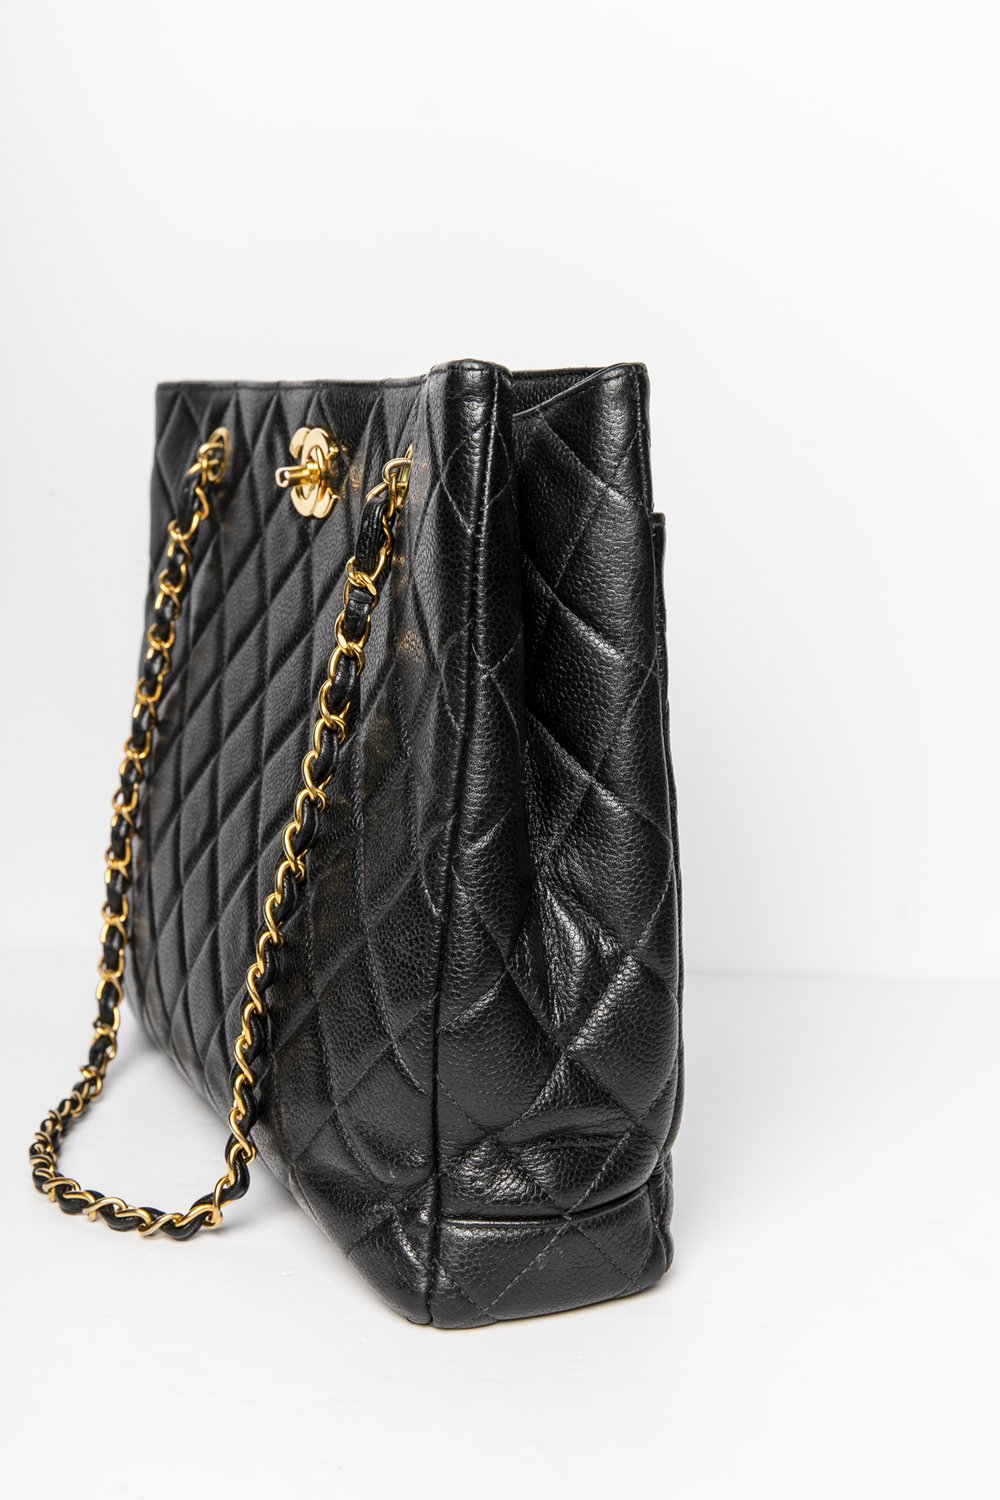 small leather chanel handbag